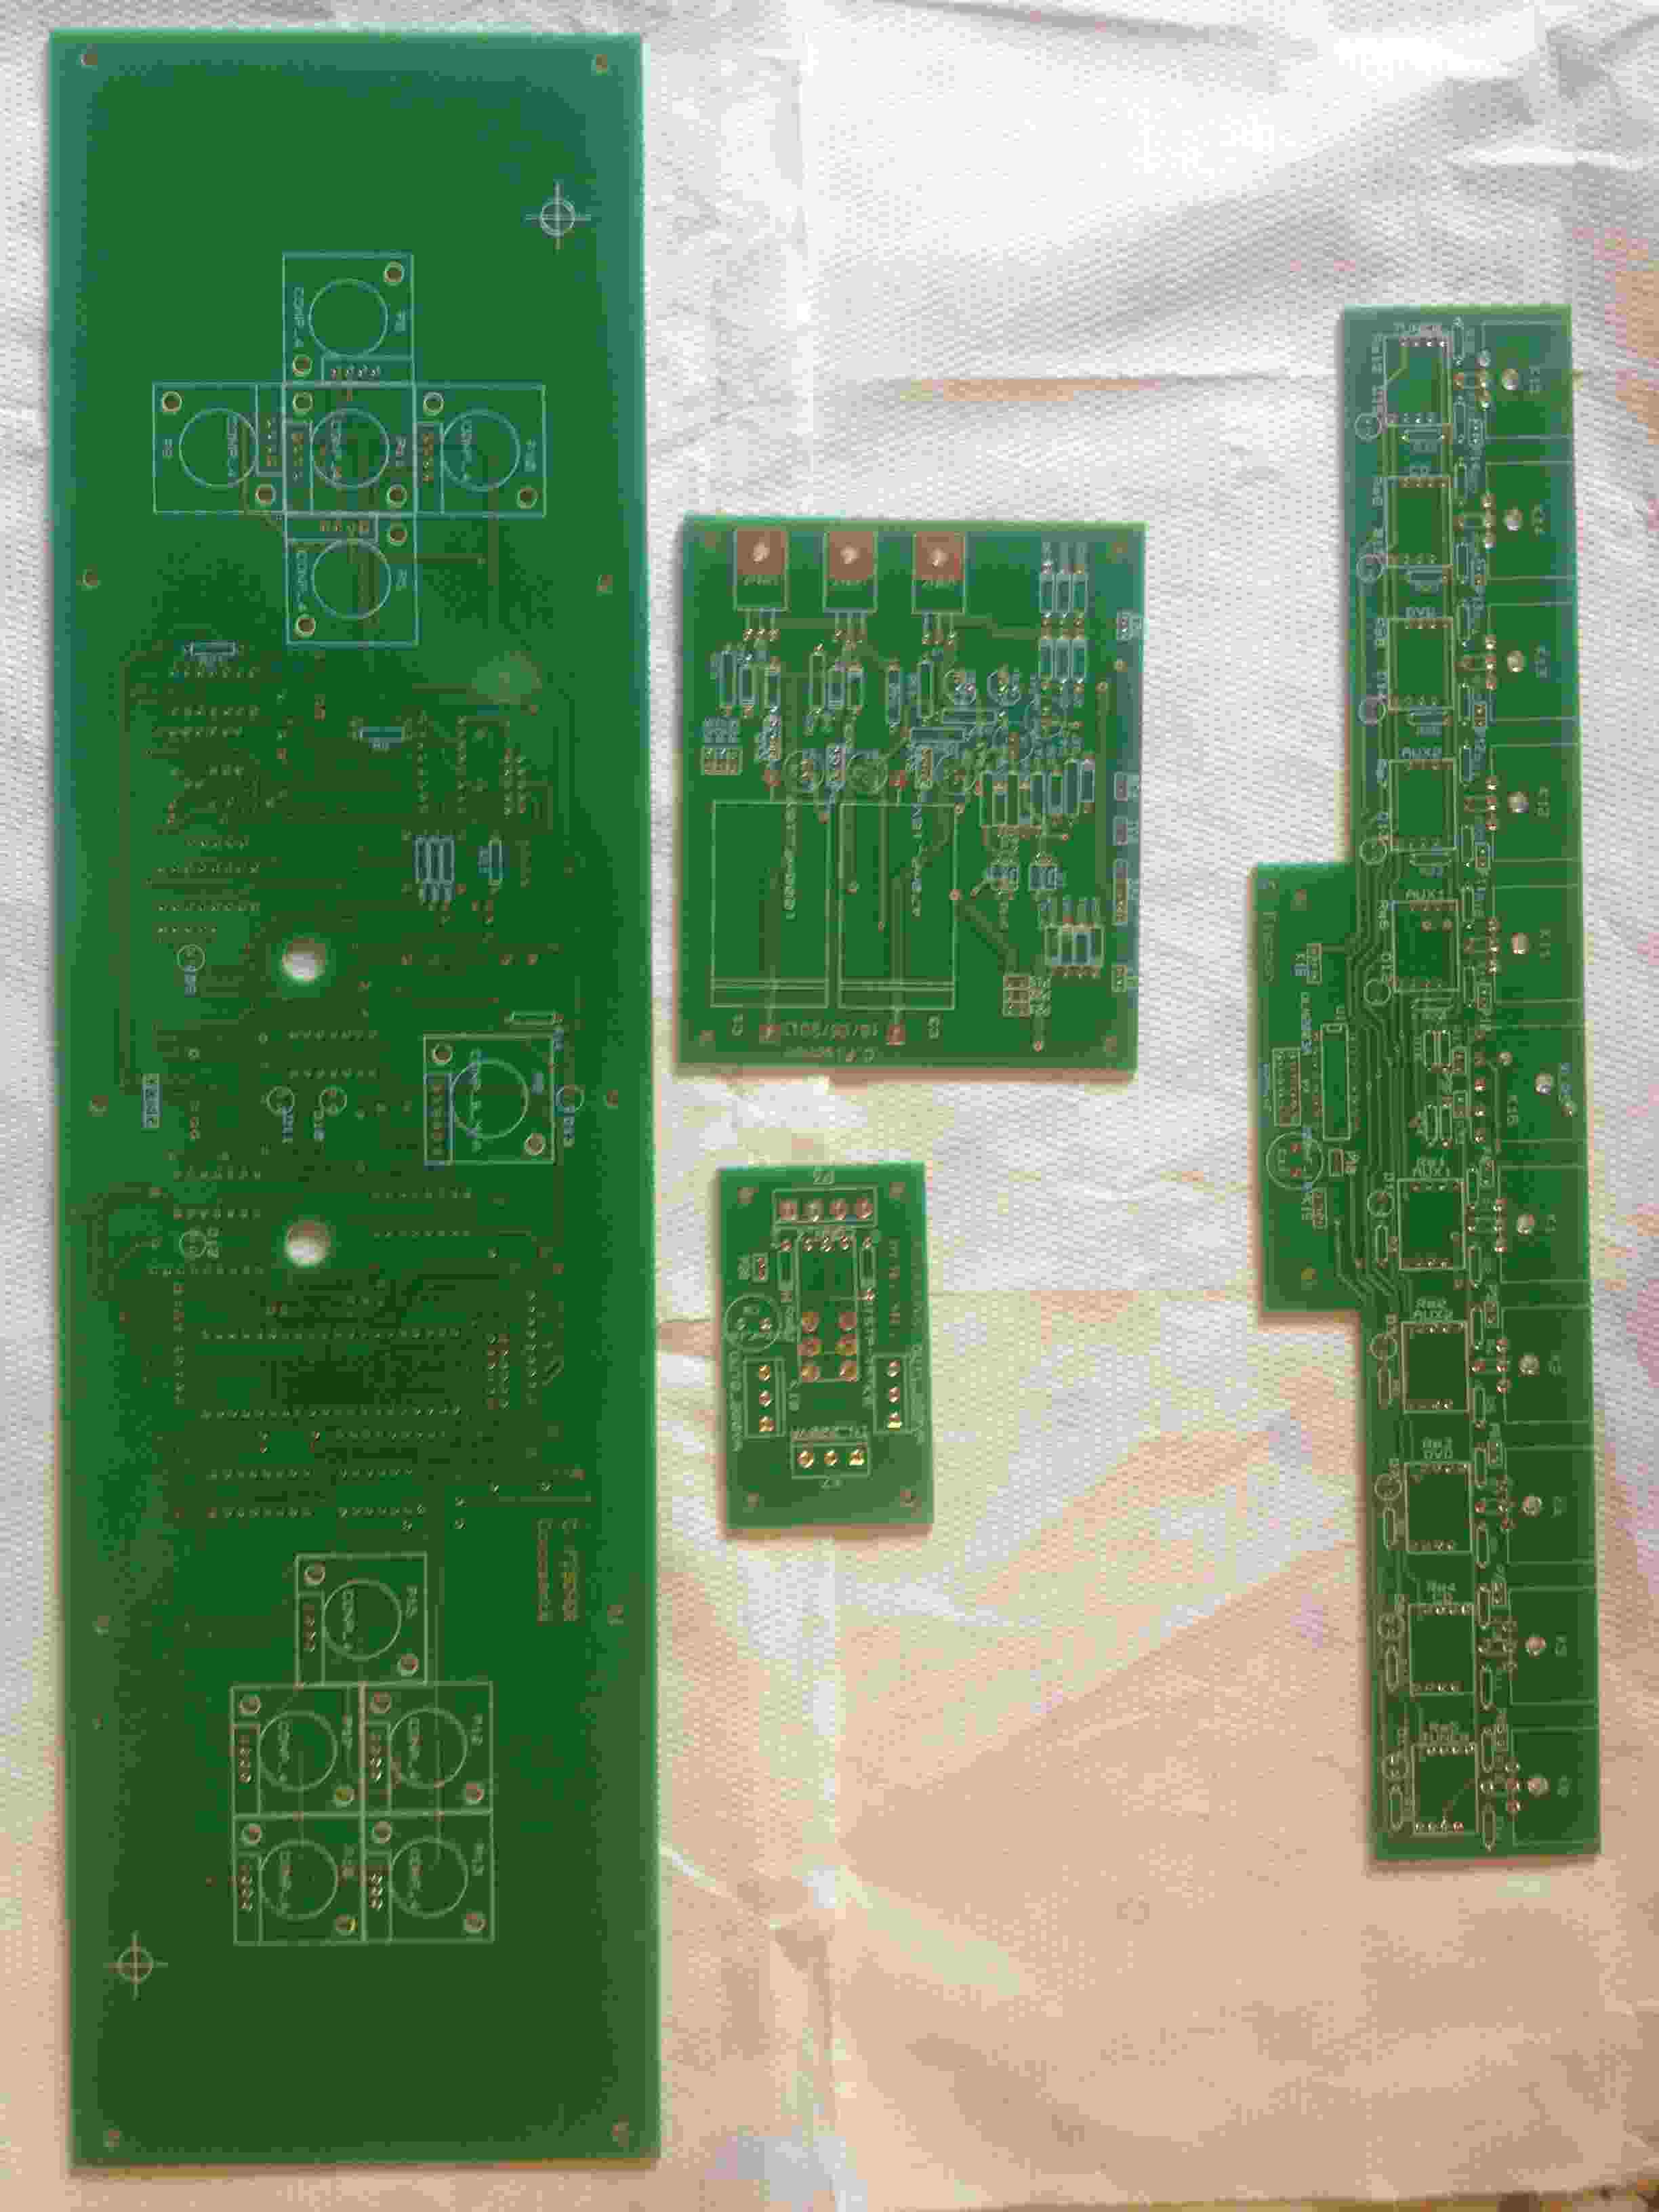 Les circuits imprimés Face avant, commutation des entrées symétriques, relai de mise sous tension et alimentation